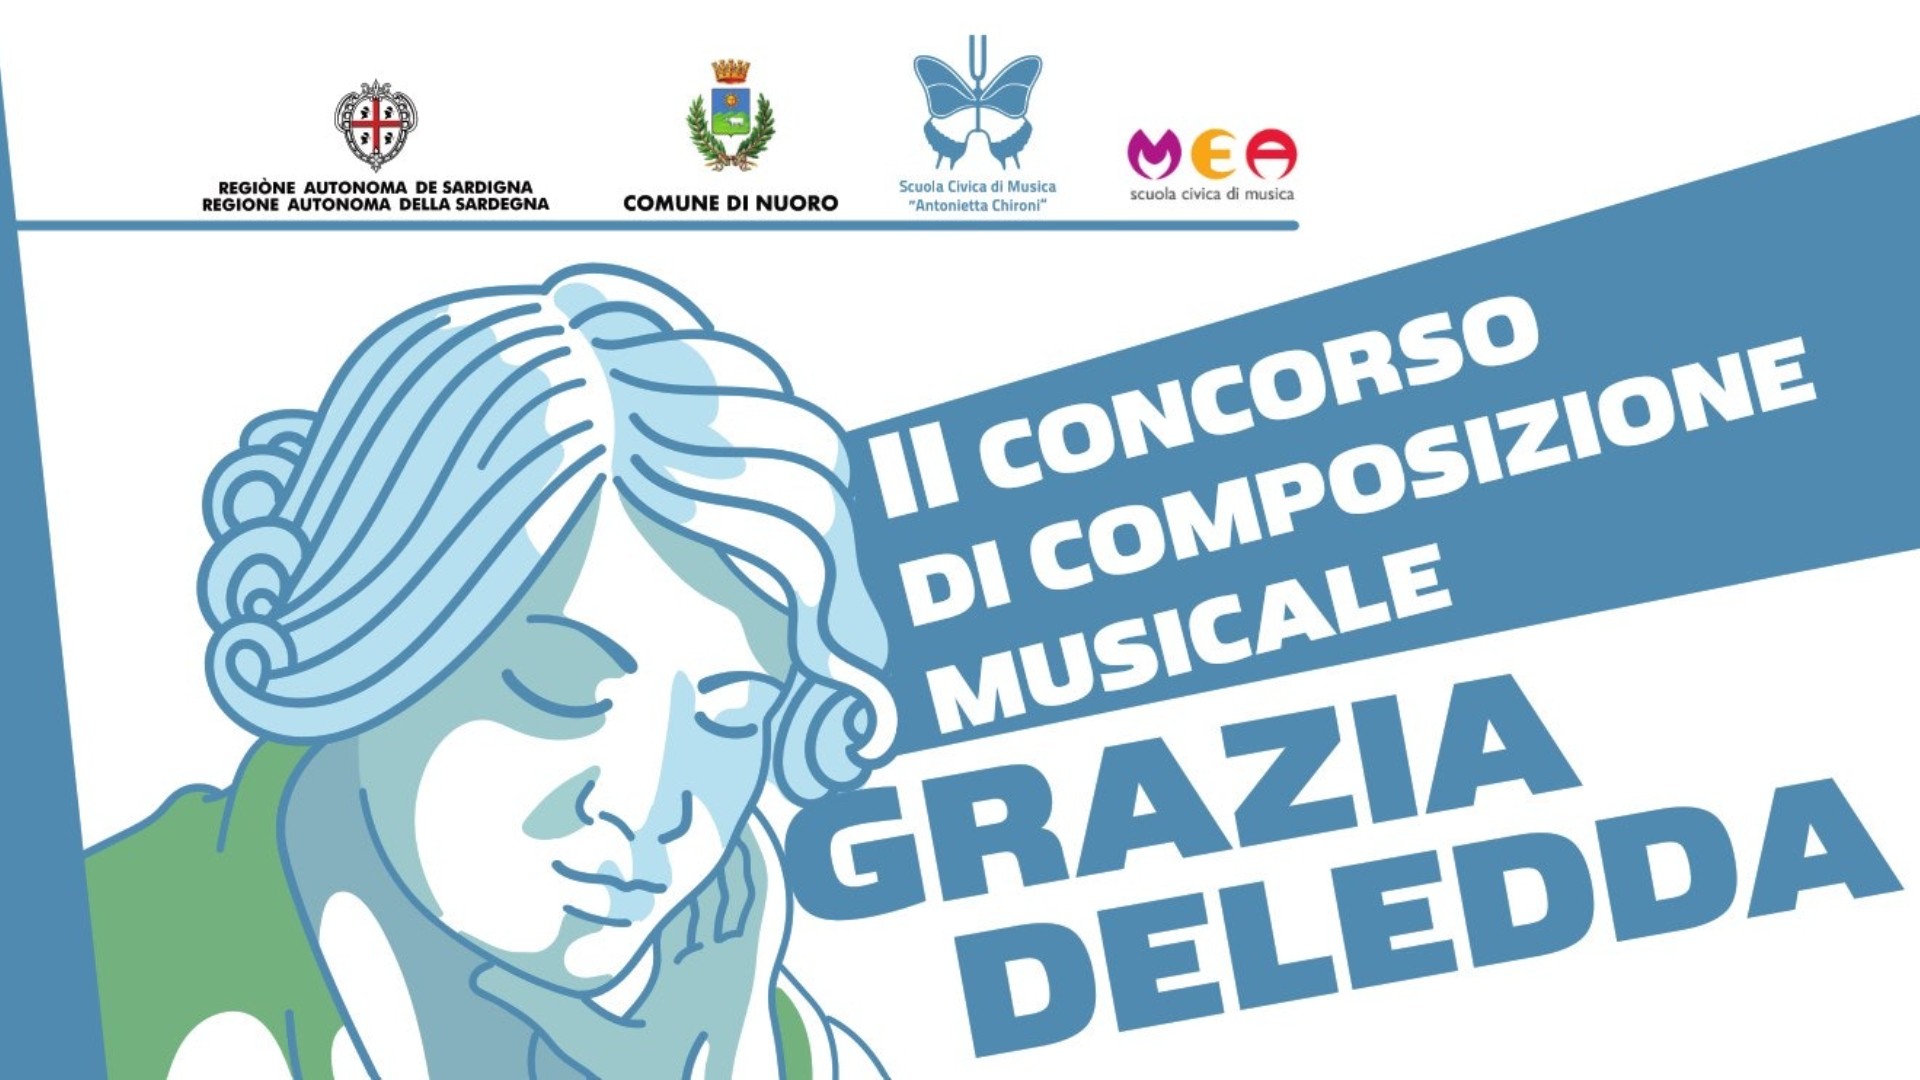 II Concorso Internazionale di Composizione Musicale “Grazia Deledda” | II International Musical Composition Competition “Grazia Deledda”